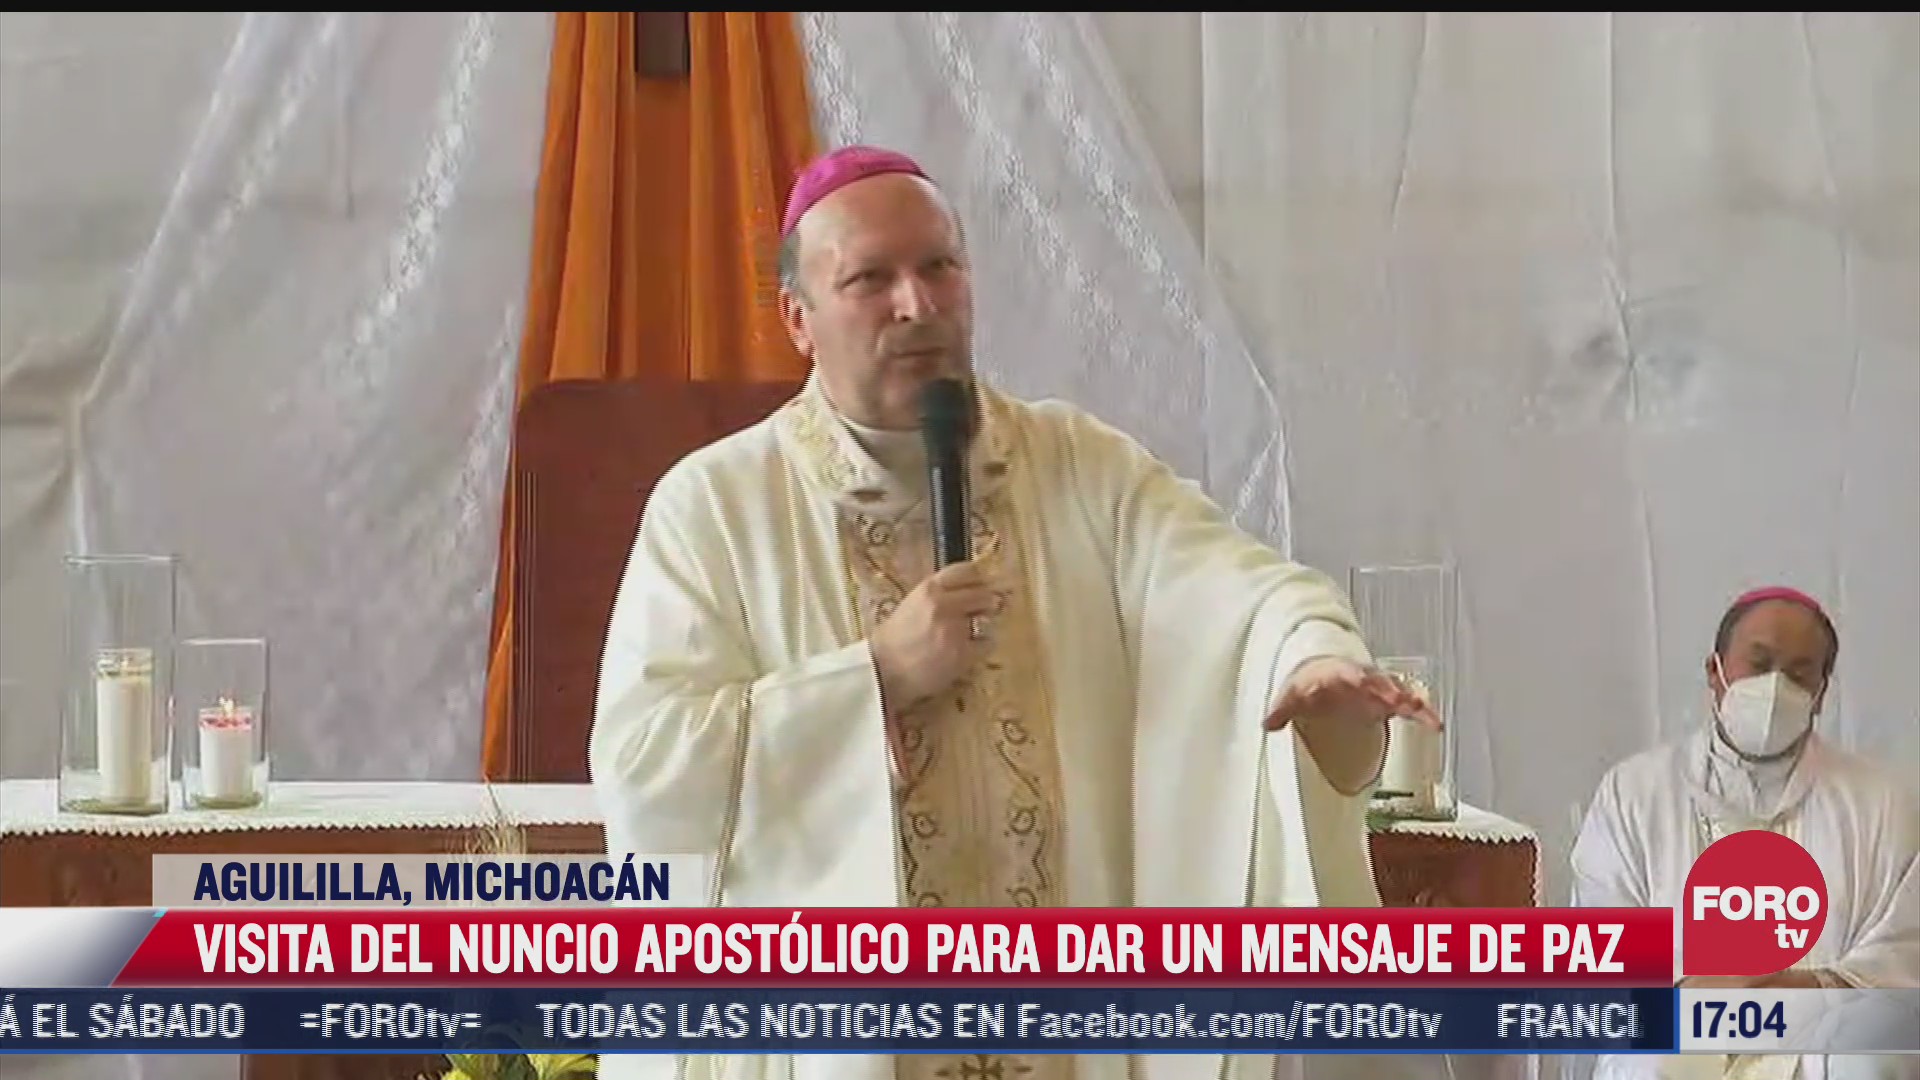 nuncio apostolico visita mexico para dar mensaje de paz